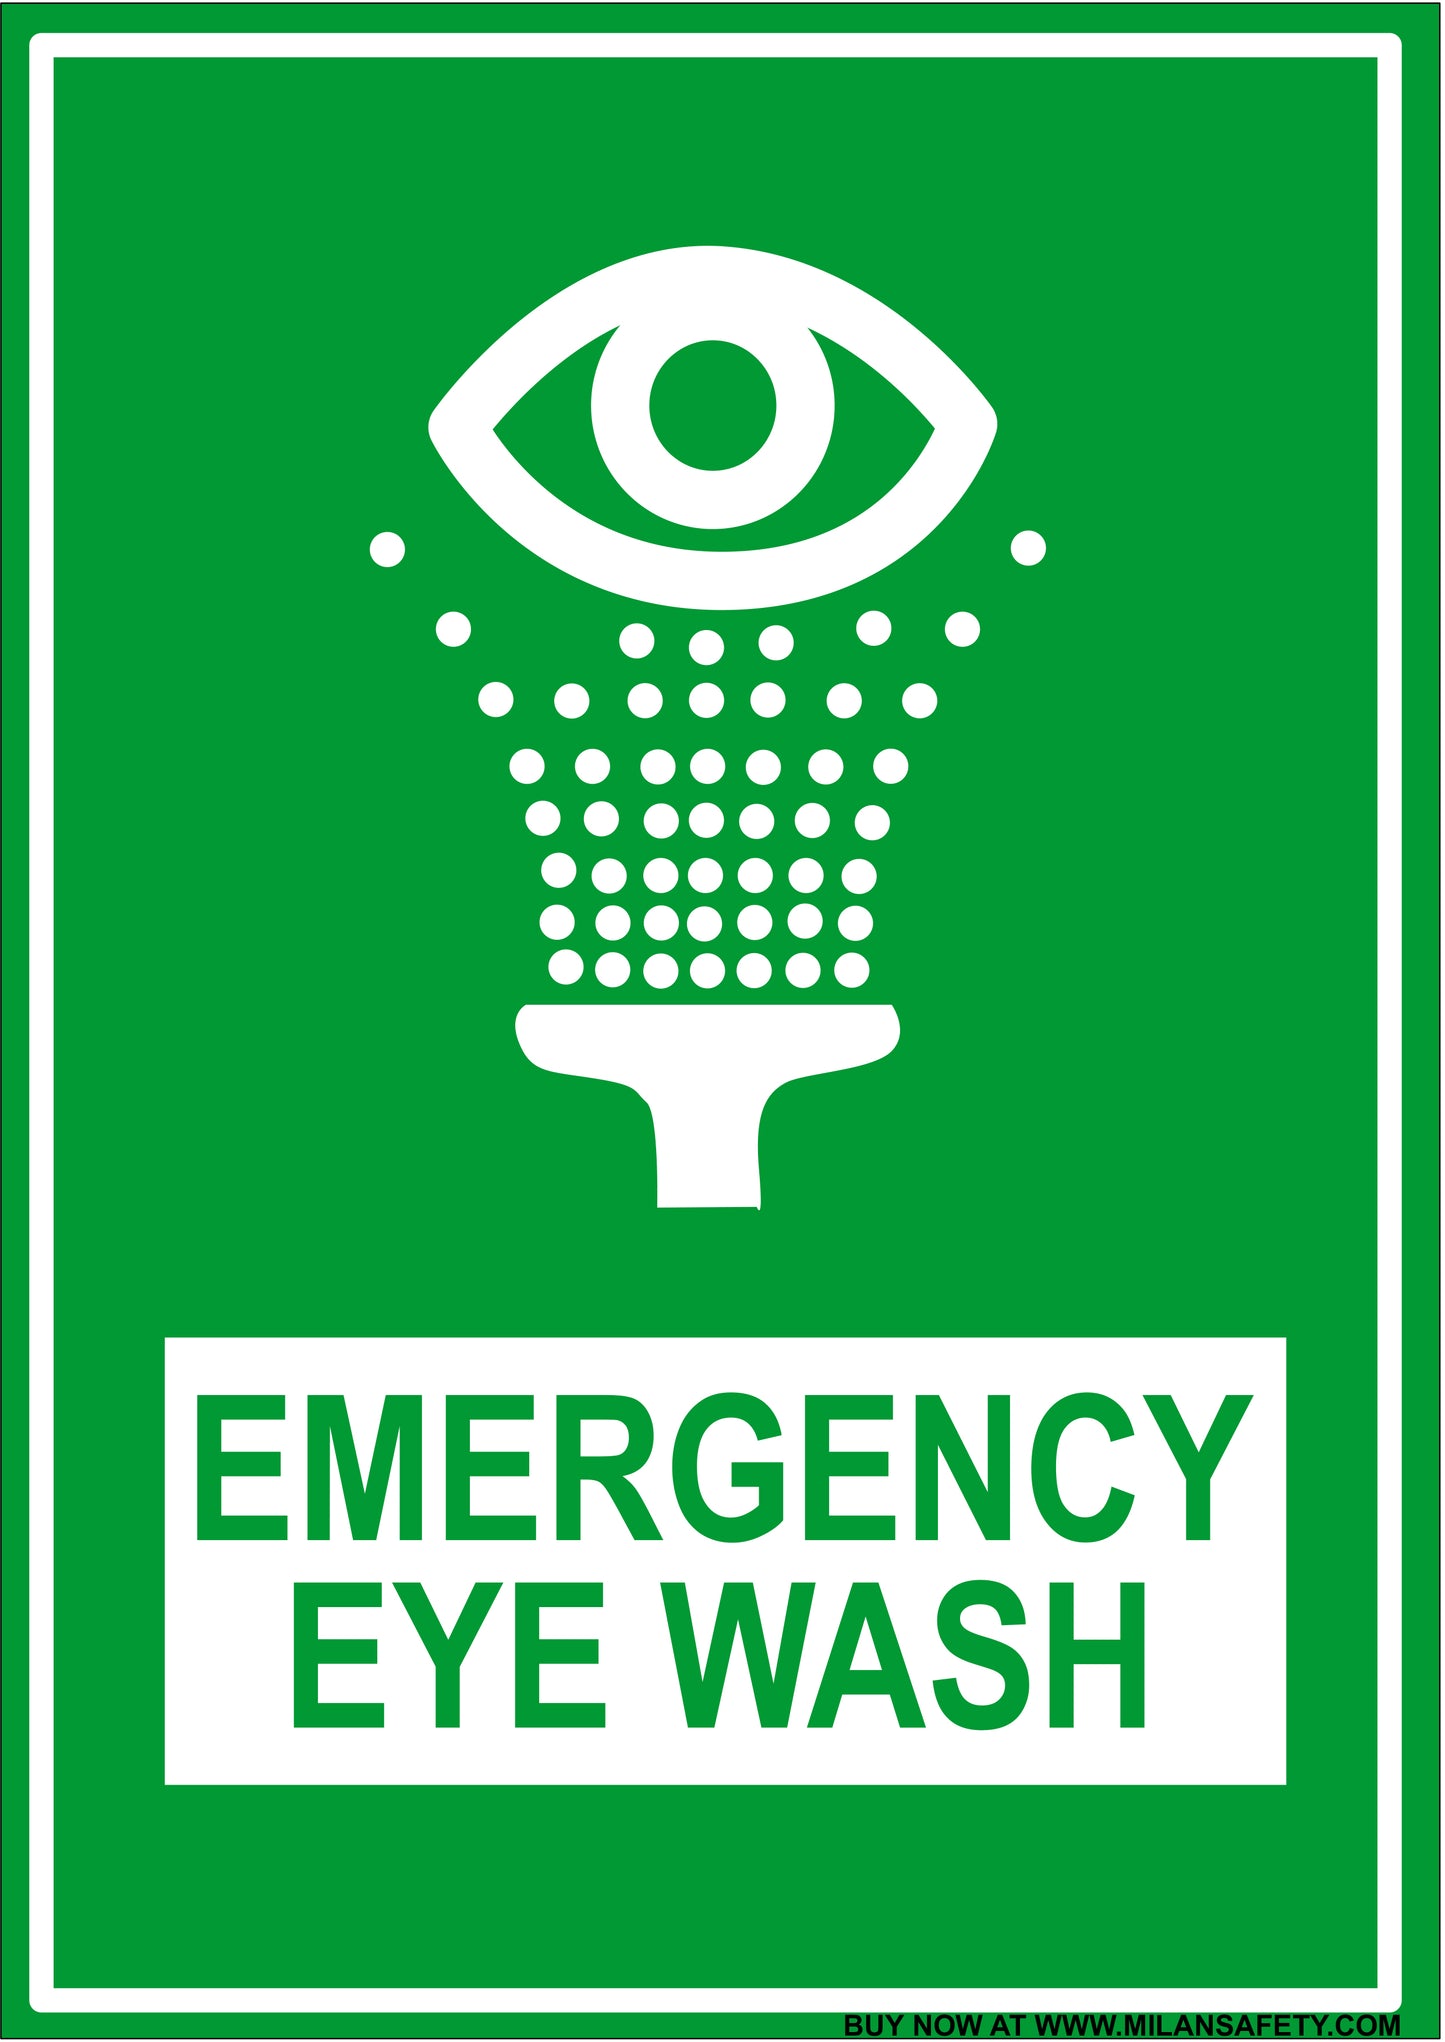 Emergency eye wash signage